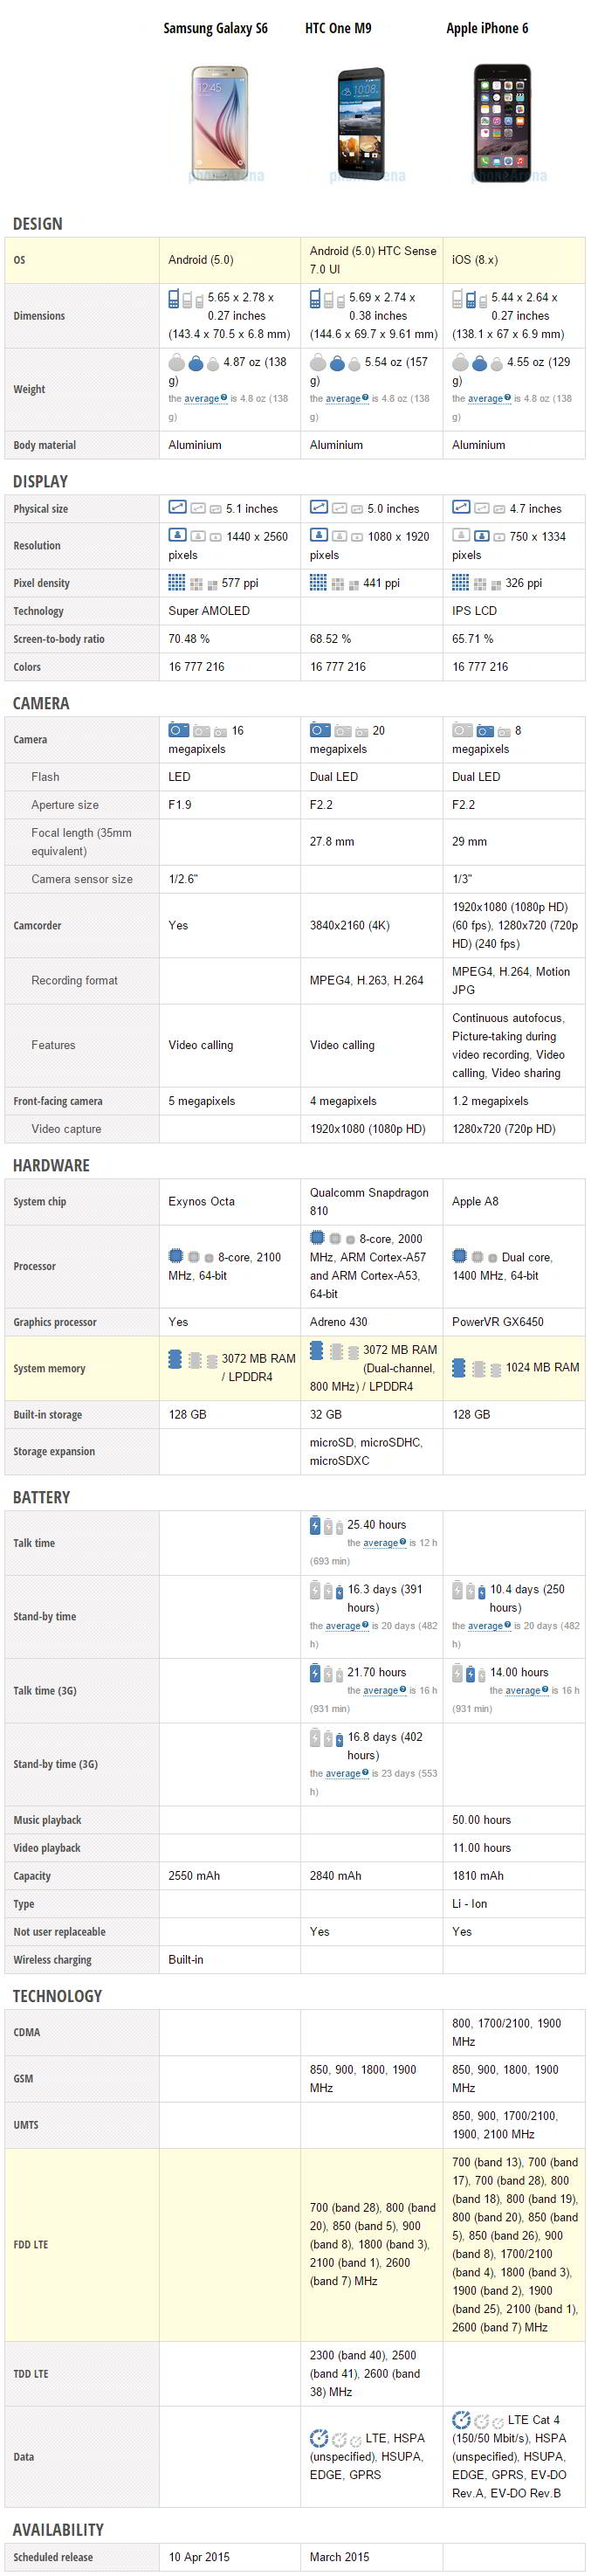 Comparación de especificaciones del Samsung Galaxy S6, HTC One M9 y Apple iPhone 6